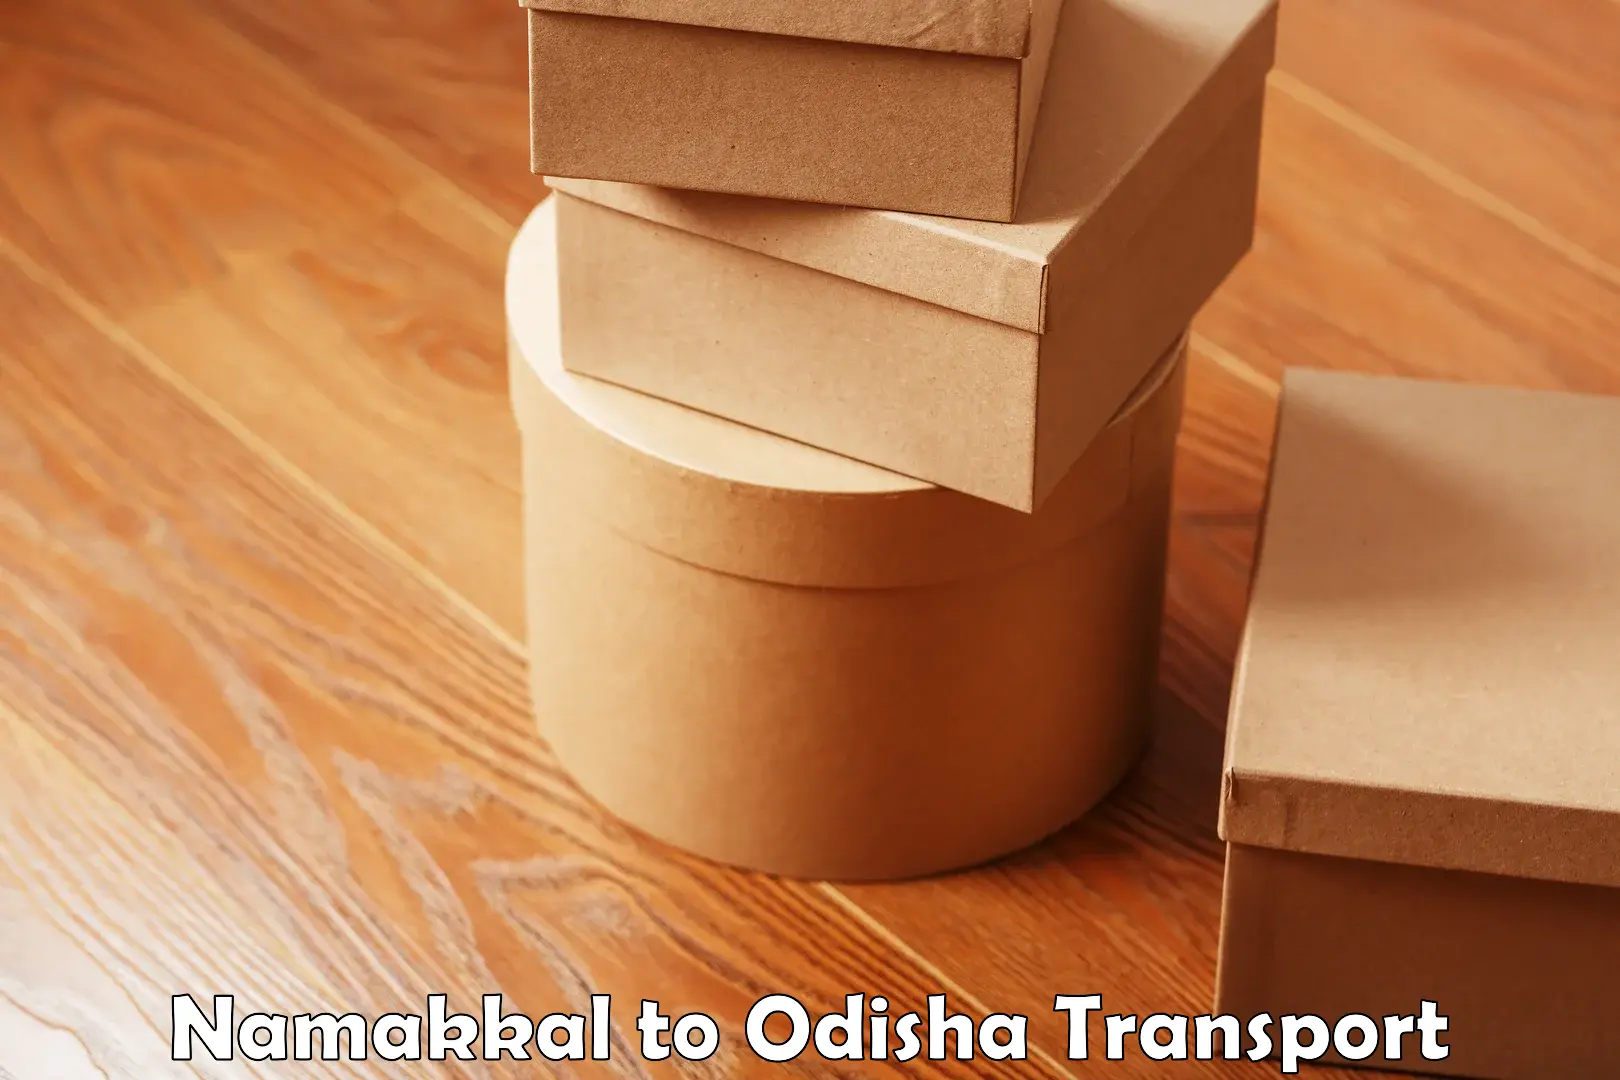 Furniture transport service Namakkal to Padampur Bargarh